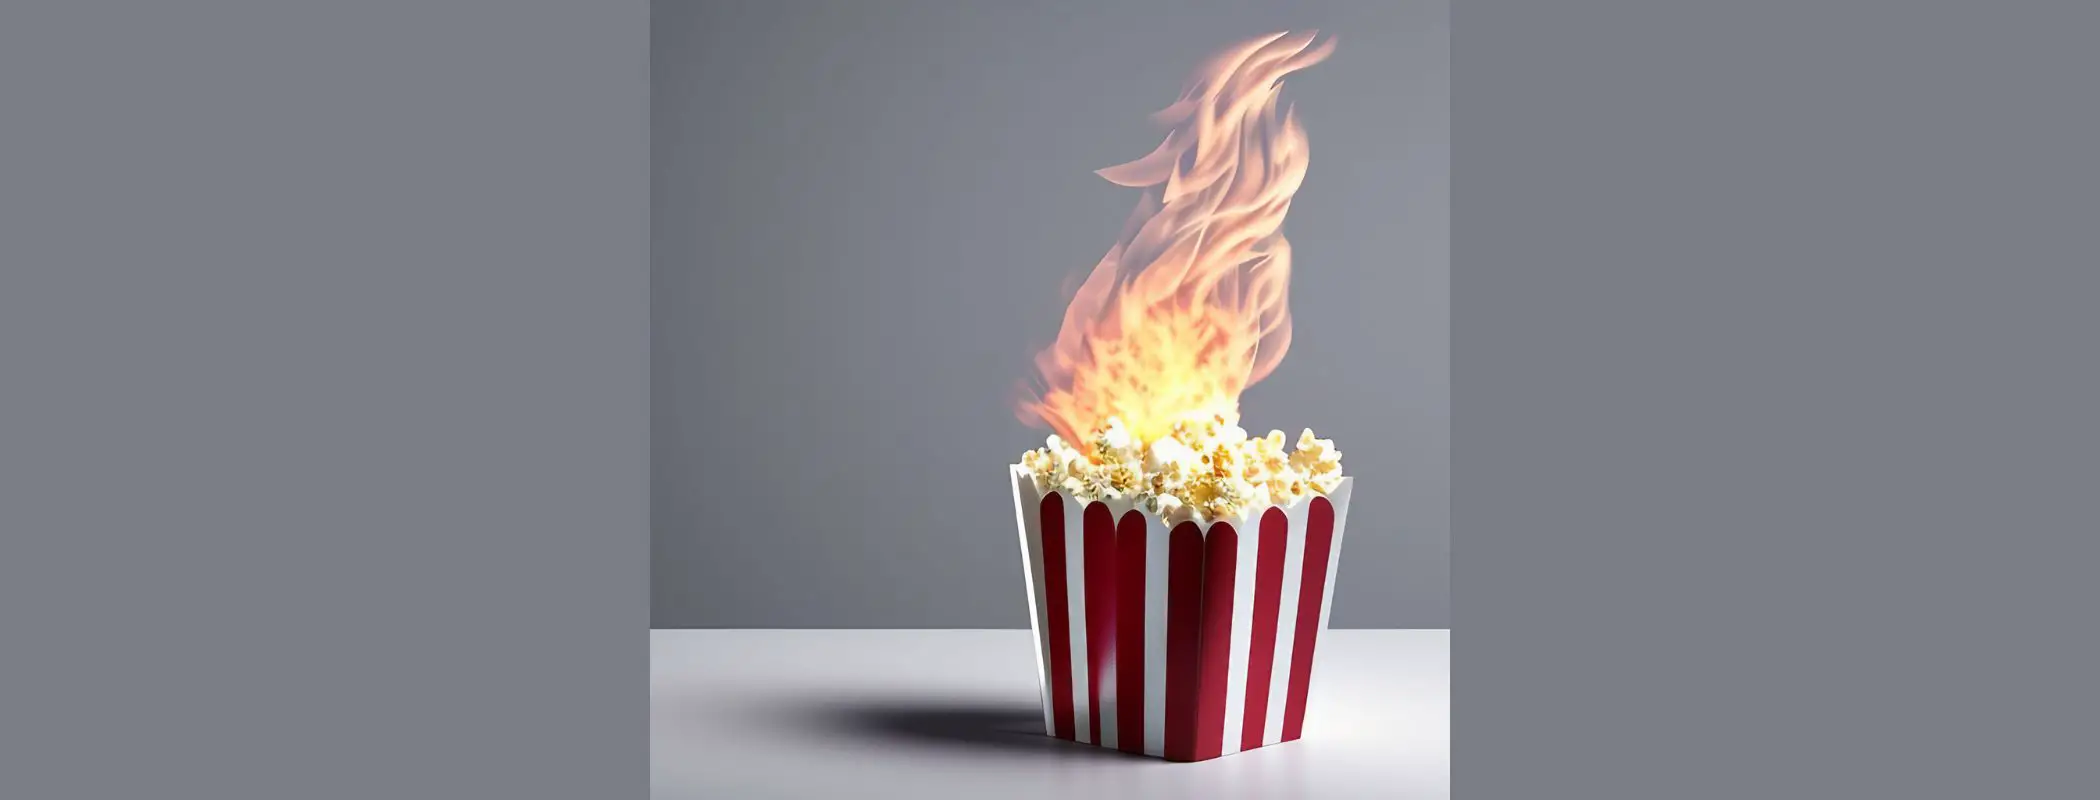 Is Popcorn A Fire Hazard?